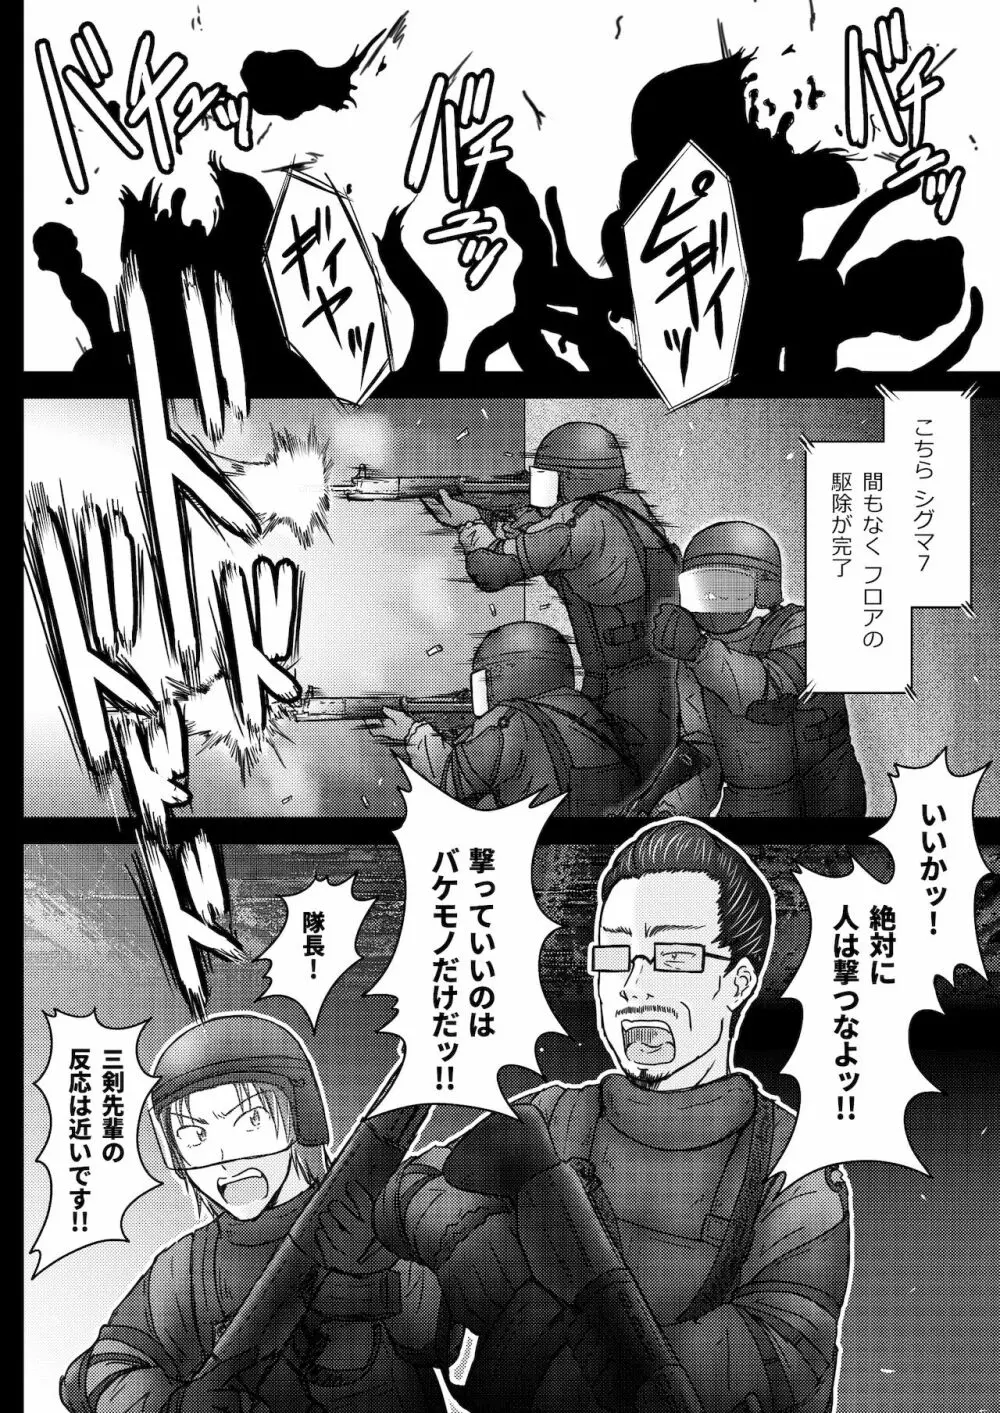 環境治安局捜査官・三剣鏡 #01 DEVIL MAY CARE - page37